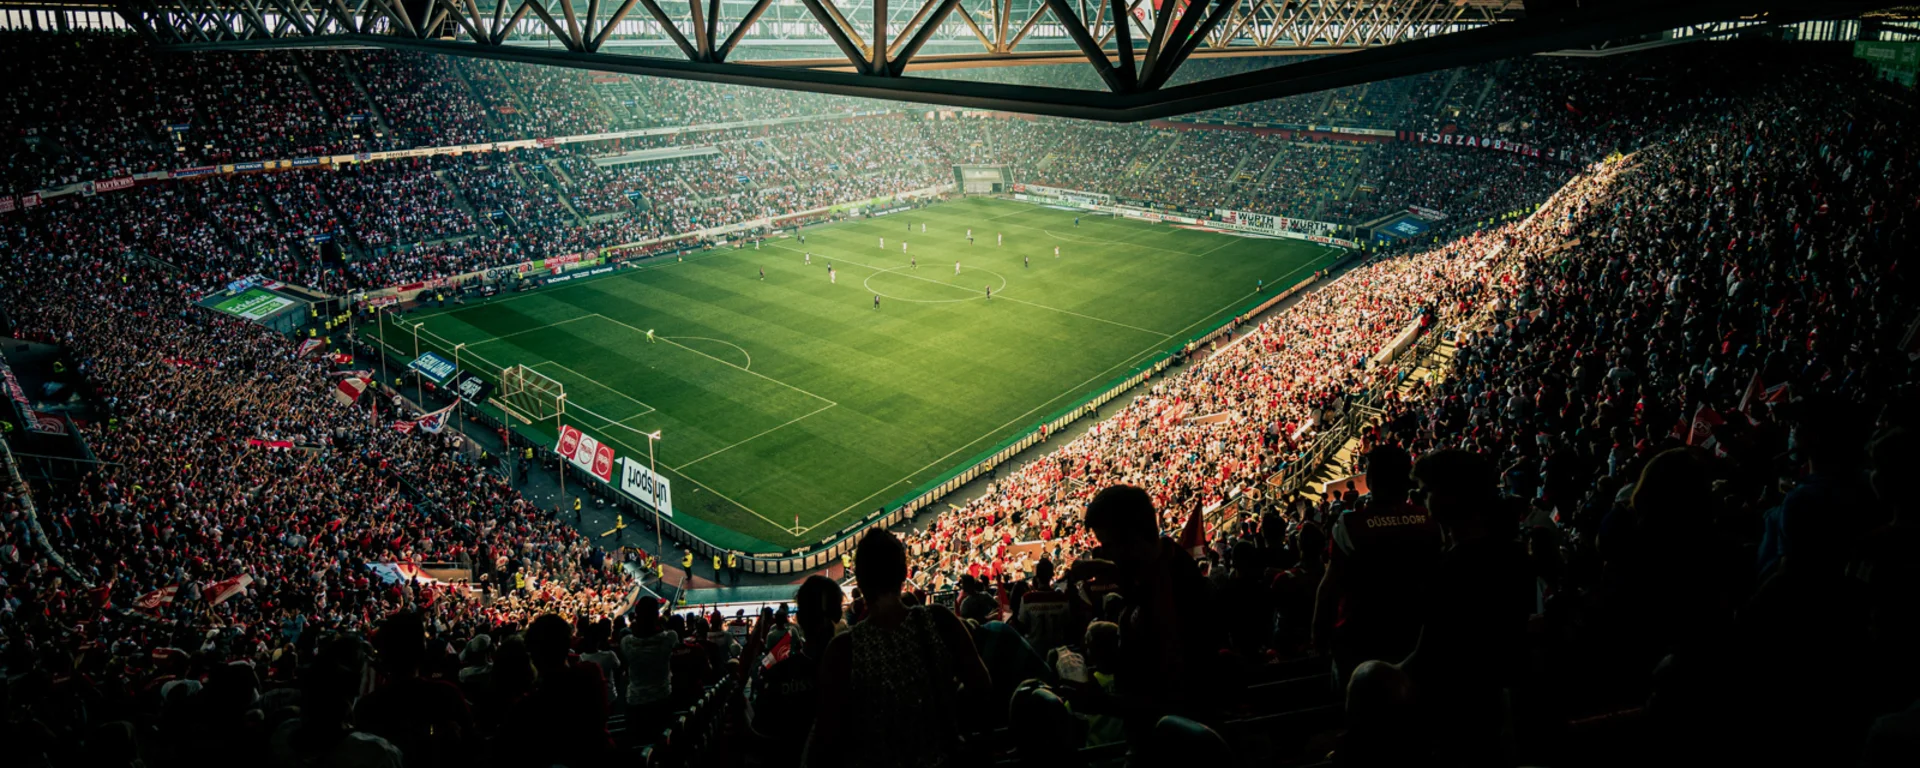 Fußballstadion während eines Spiels